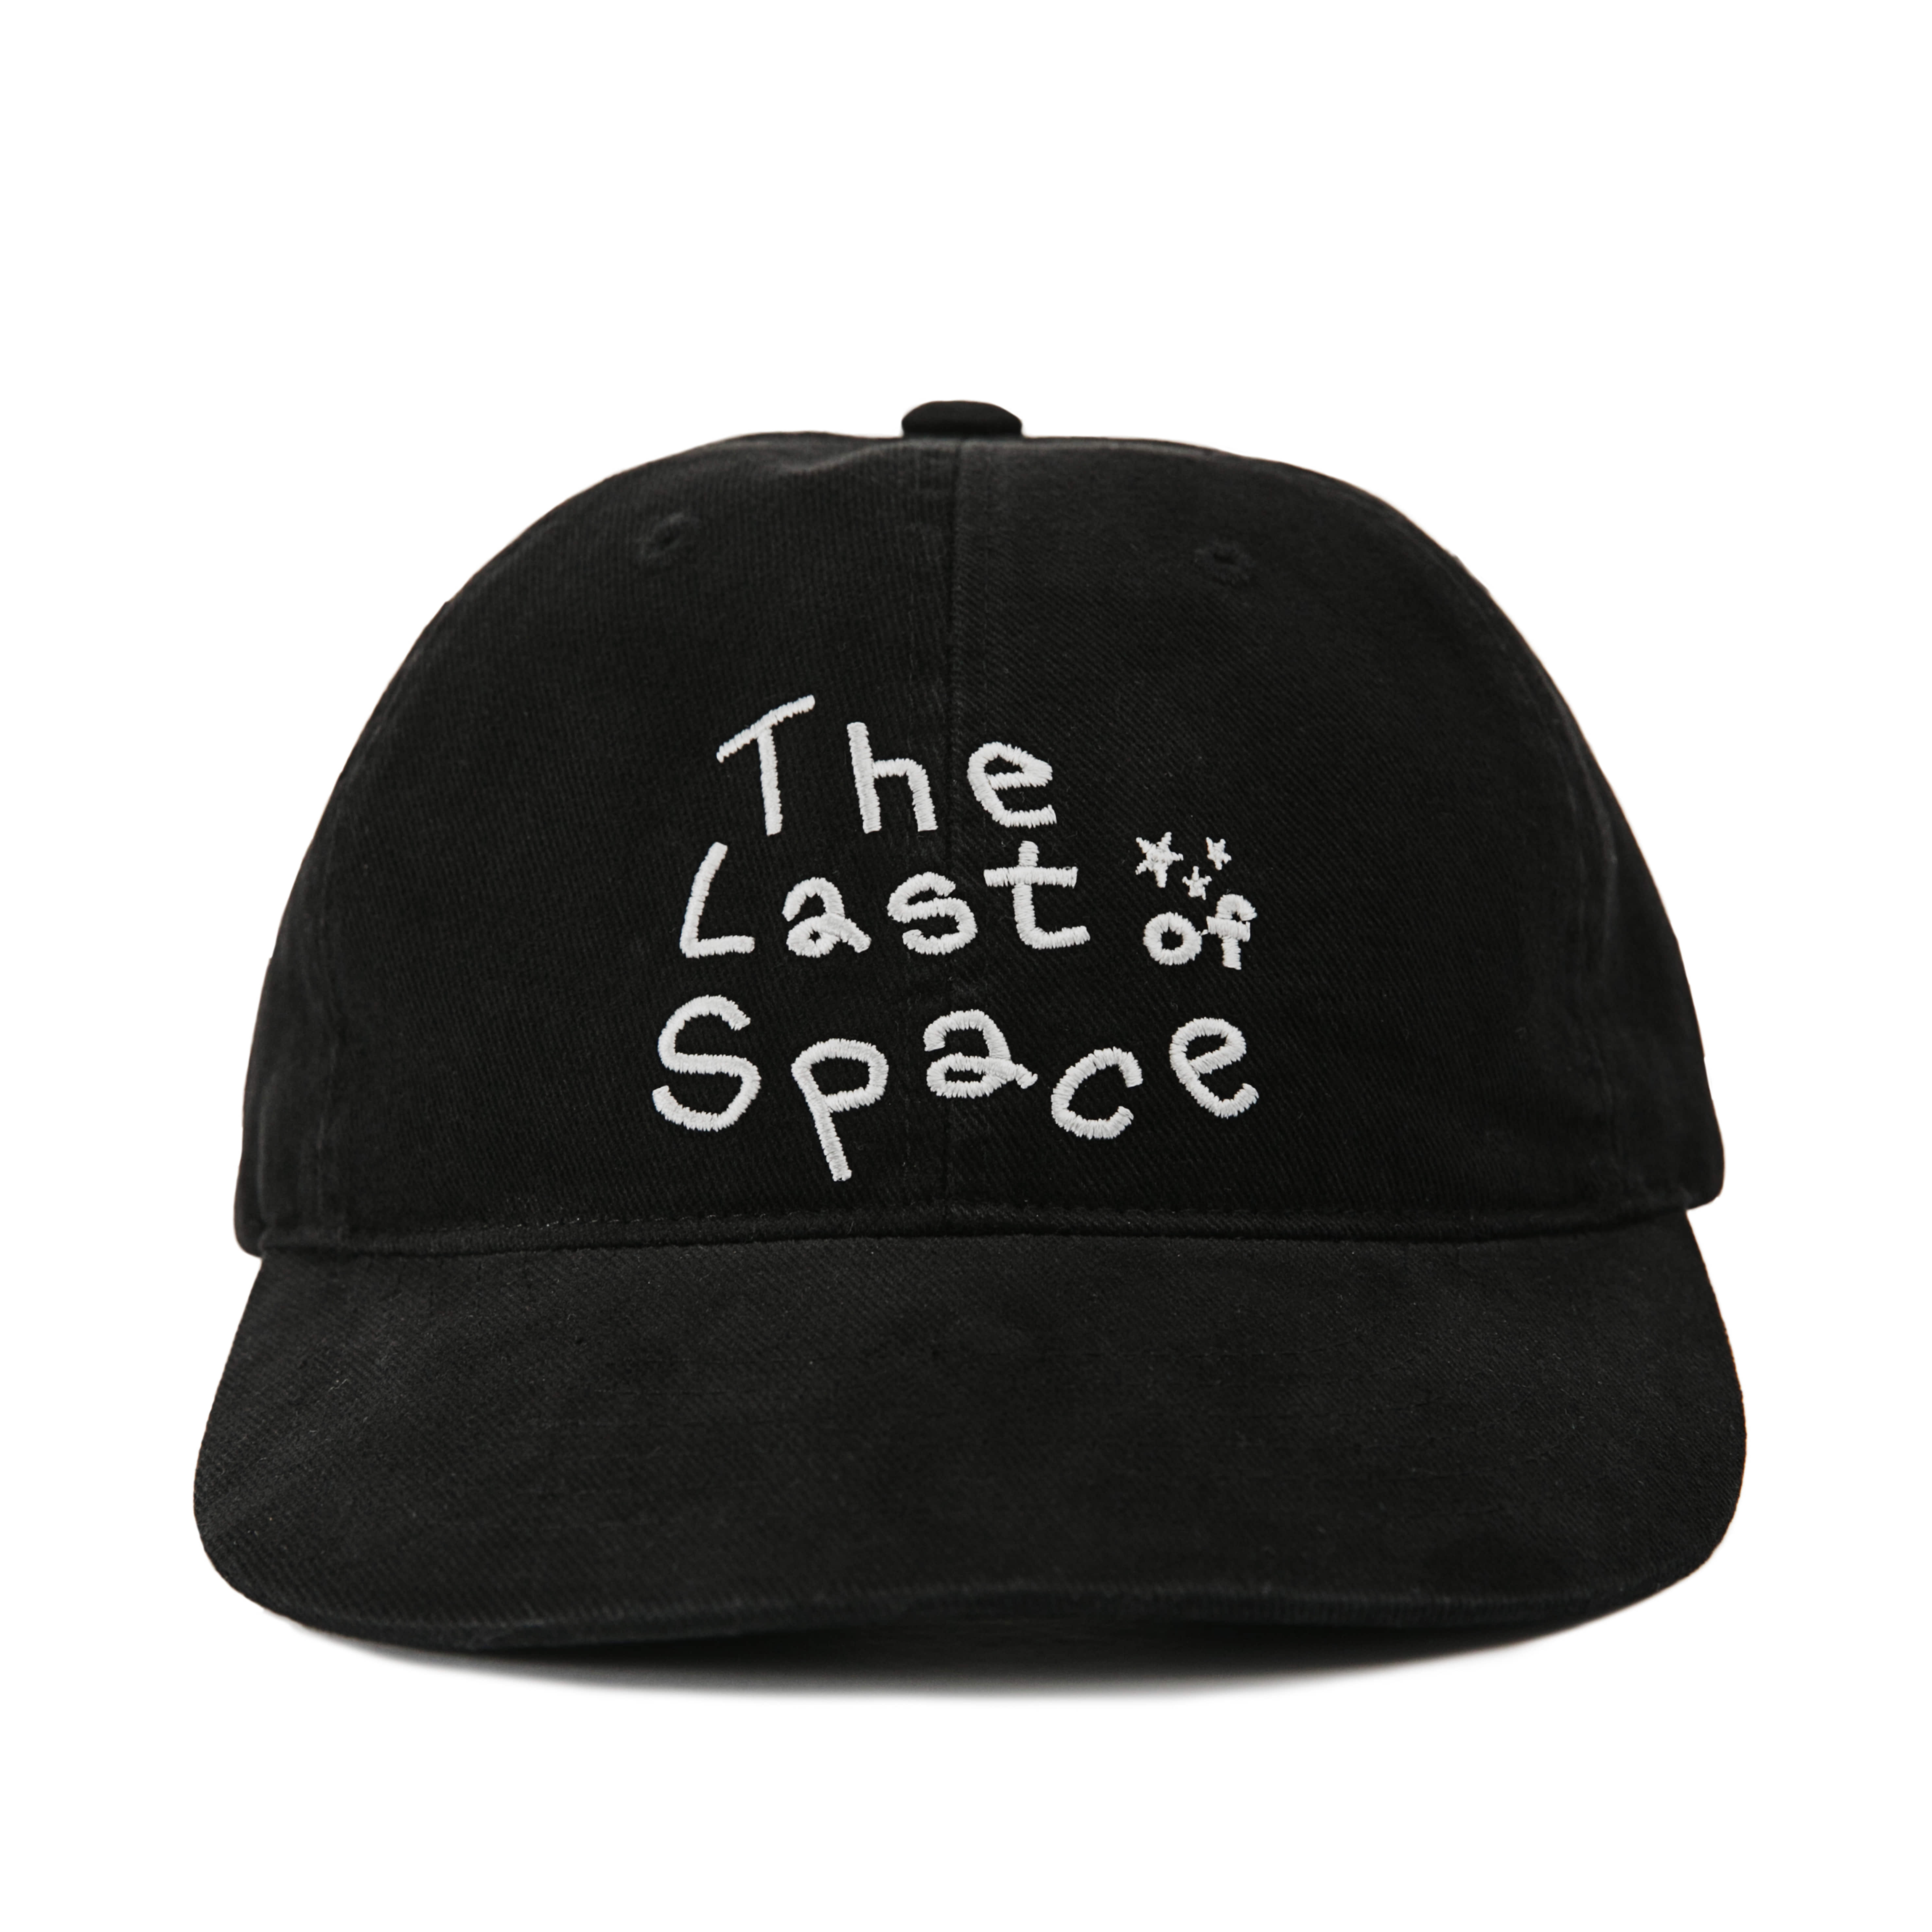 Last of Space cap (Black)